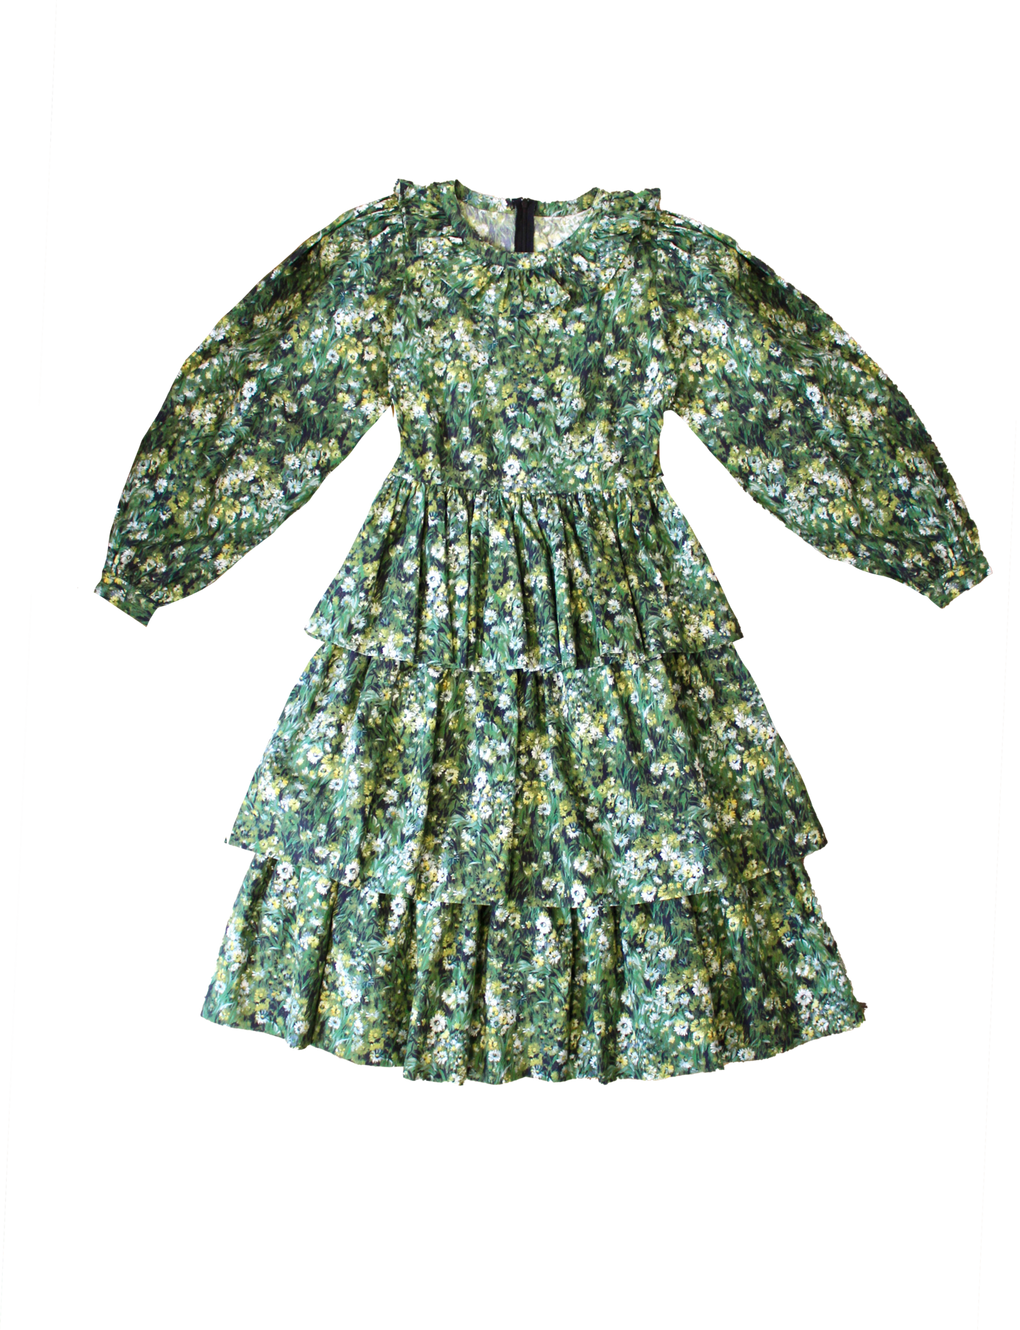 Laura Ashley Batsheva - Laura Ashley Batsheva Little Girls Welsh Dress- Batsheva little girl dress - Batsheva green floral little girl dress - Idun - St. Paul